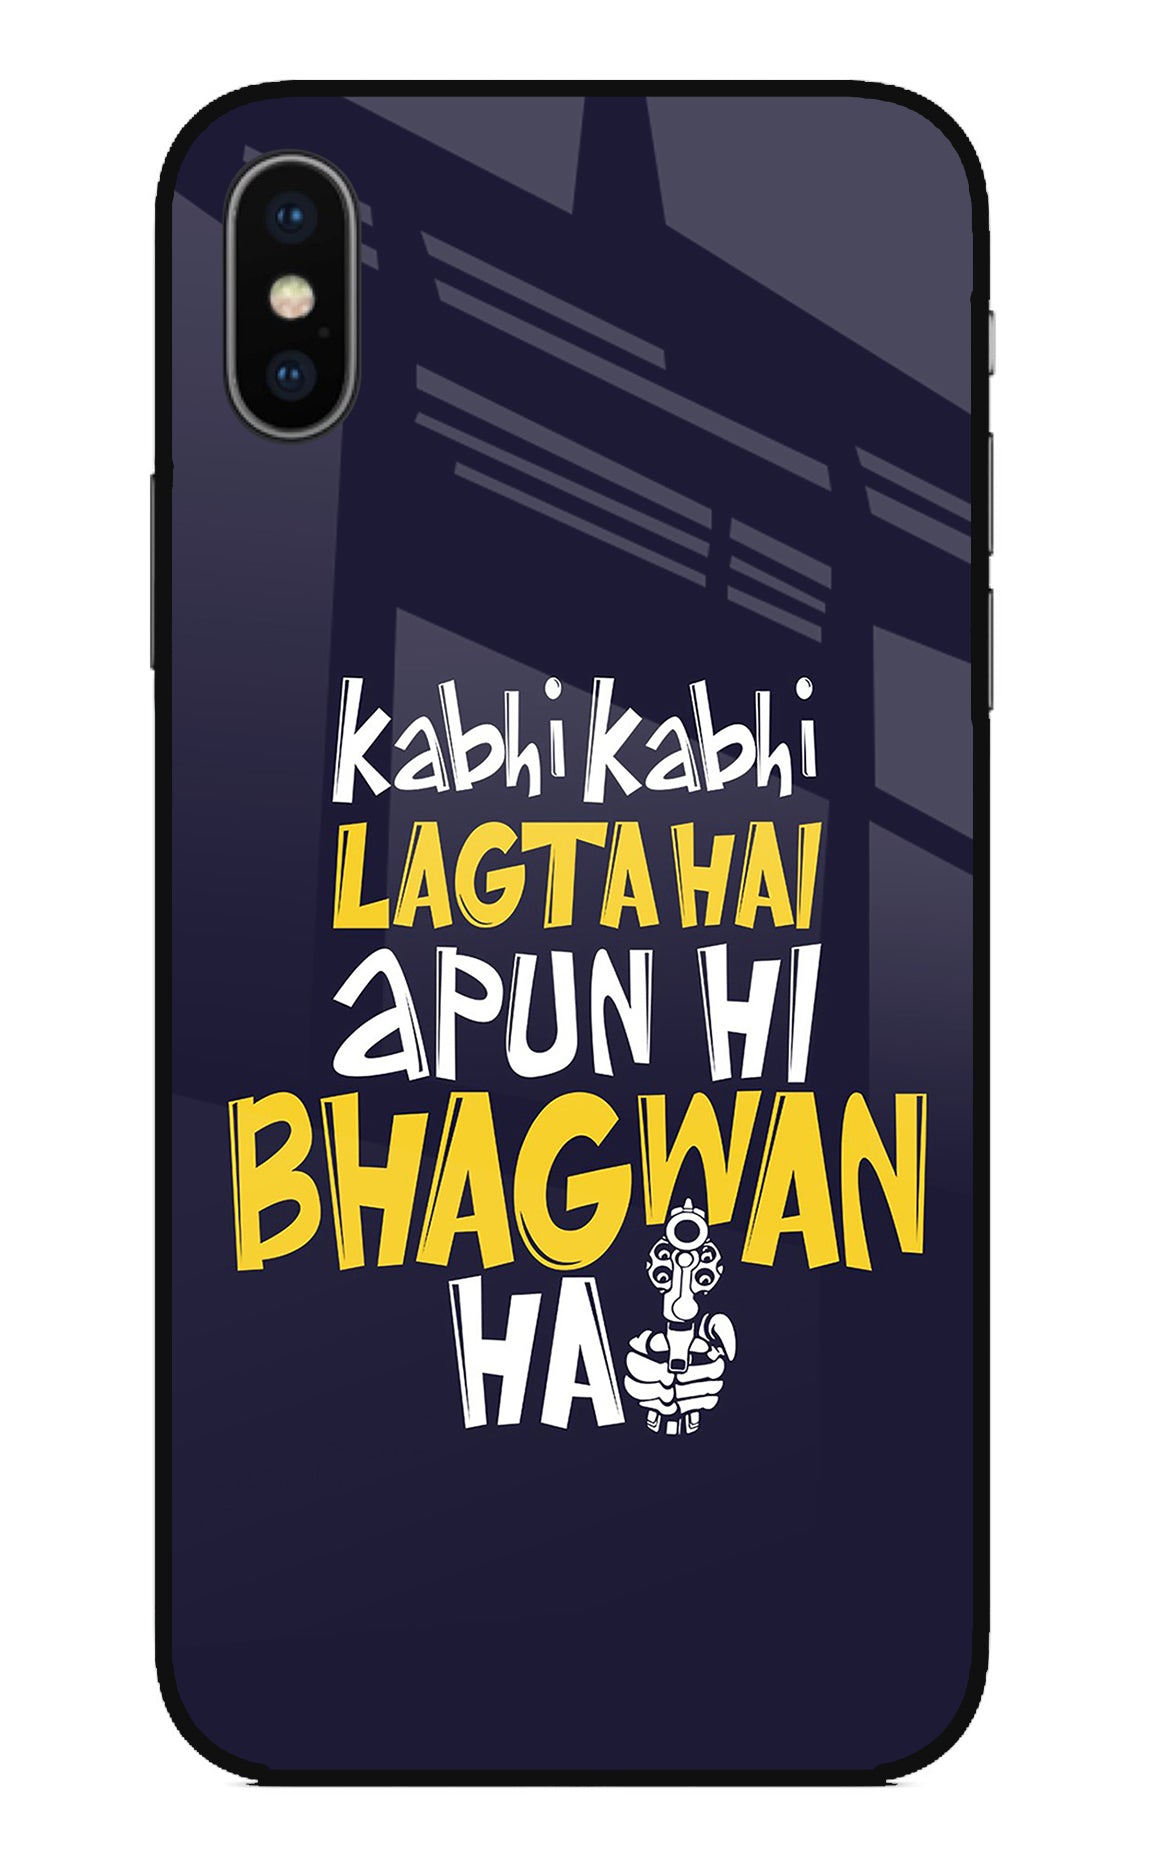 Kabhi Kabhi Lagta Hai Apun Hi Bhagwan Hai iPhone X Back Cover